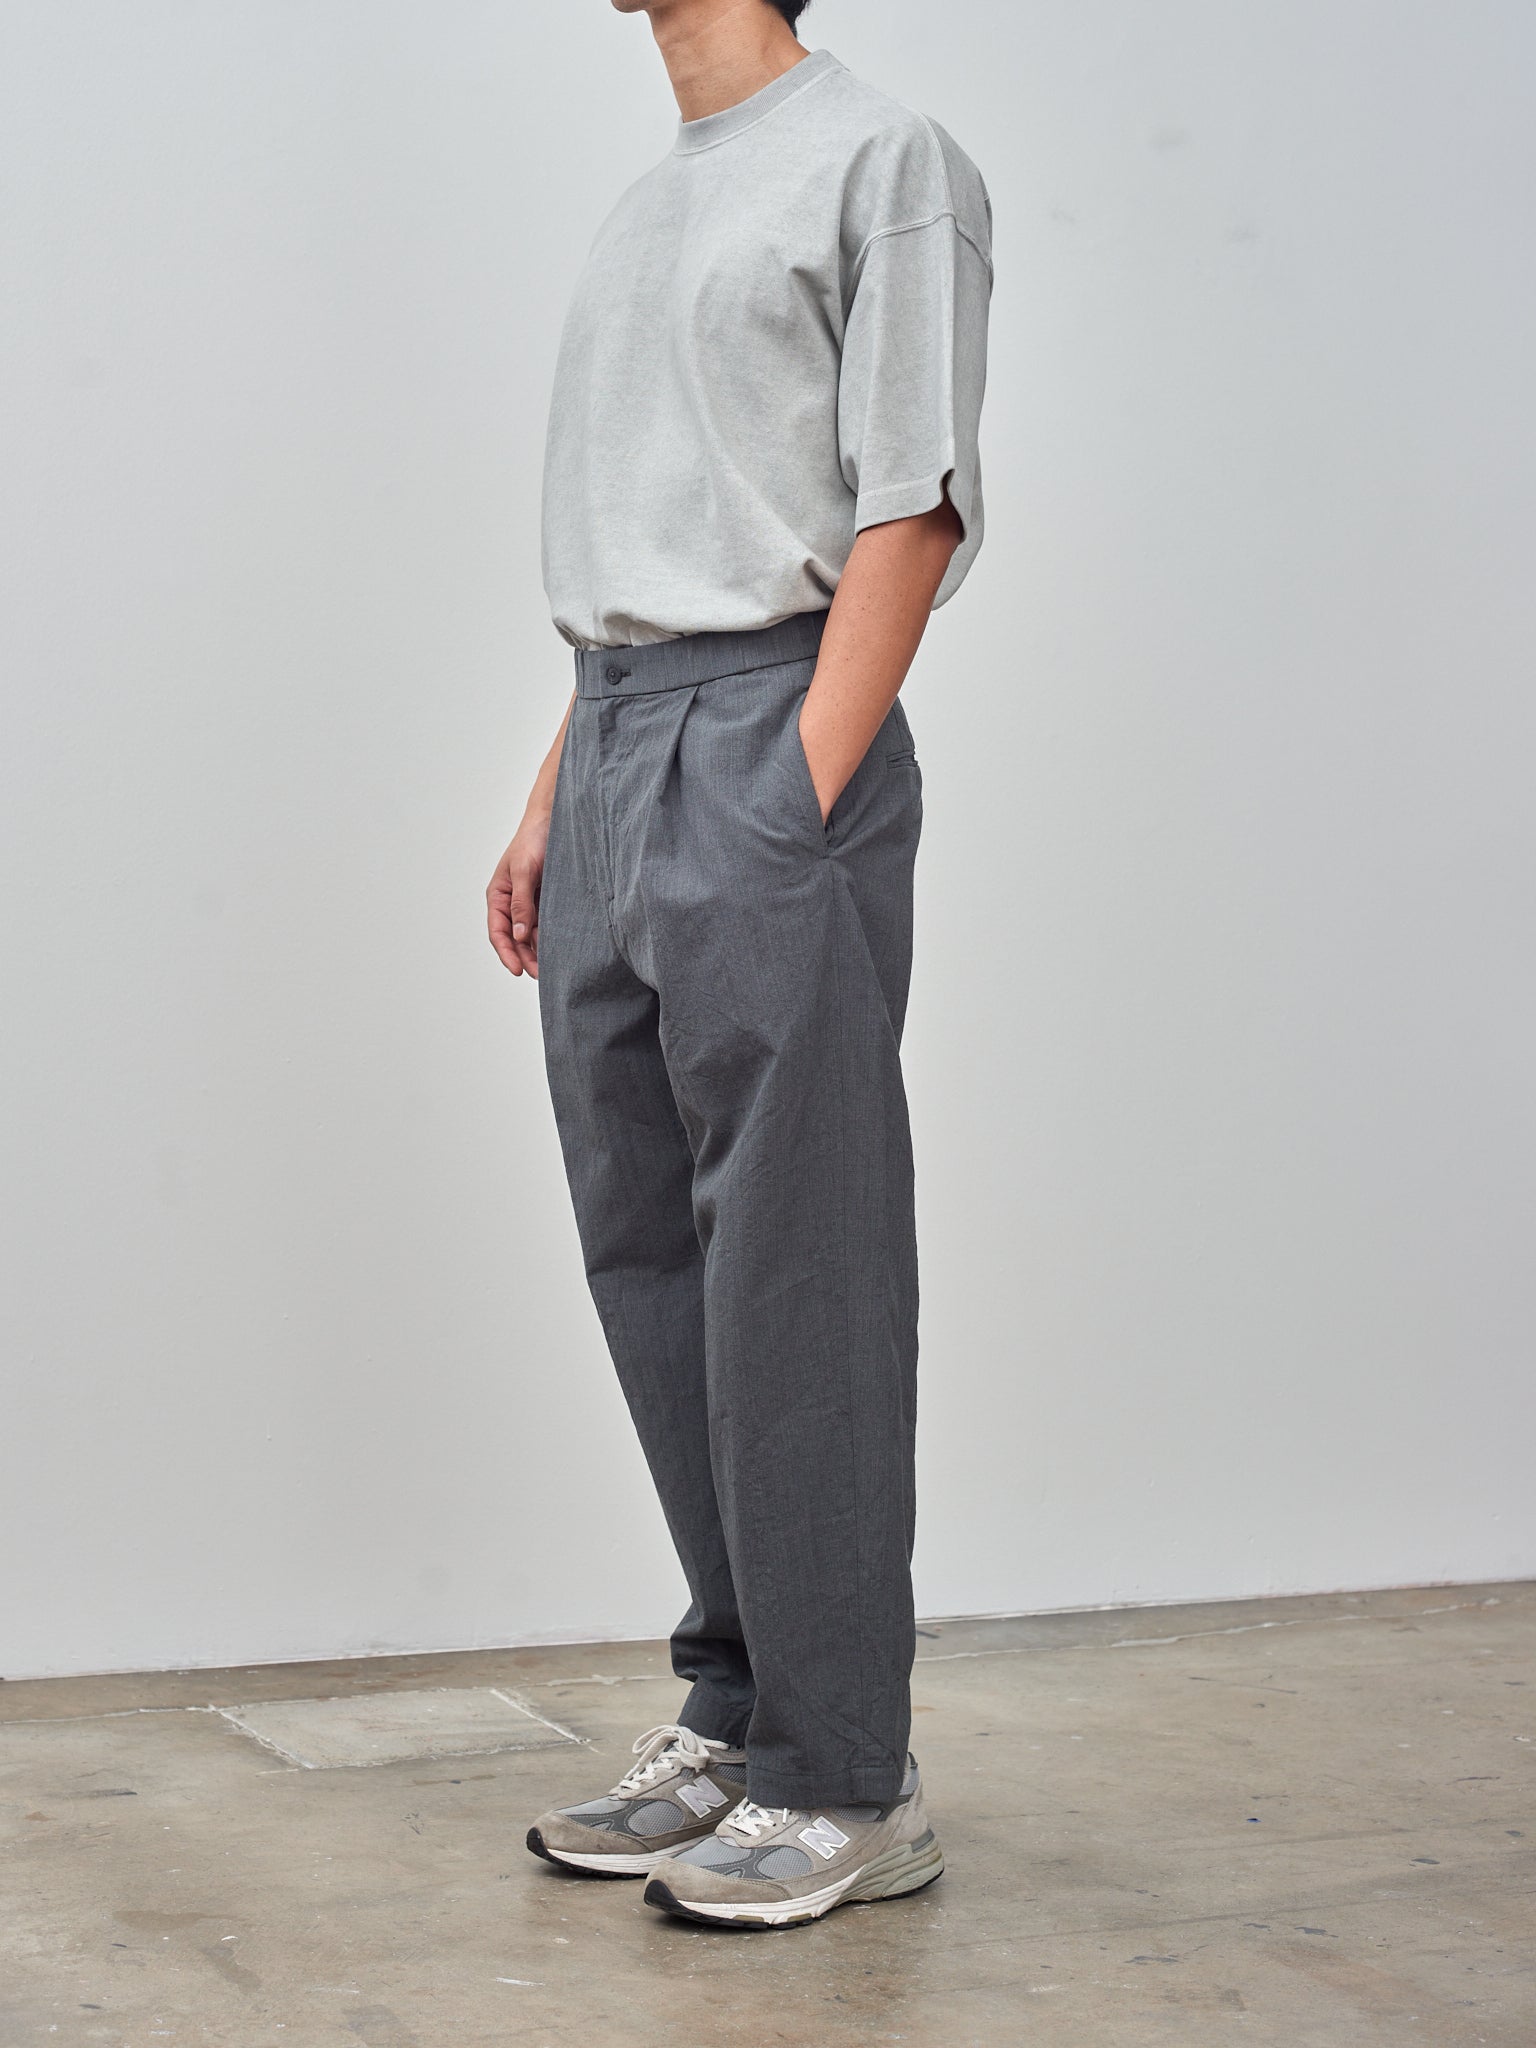 Namu Shop - Aton Wool Washi Tropical Wide Pants - Charcoal